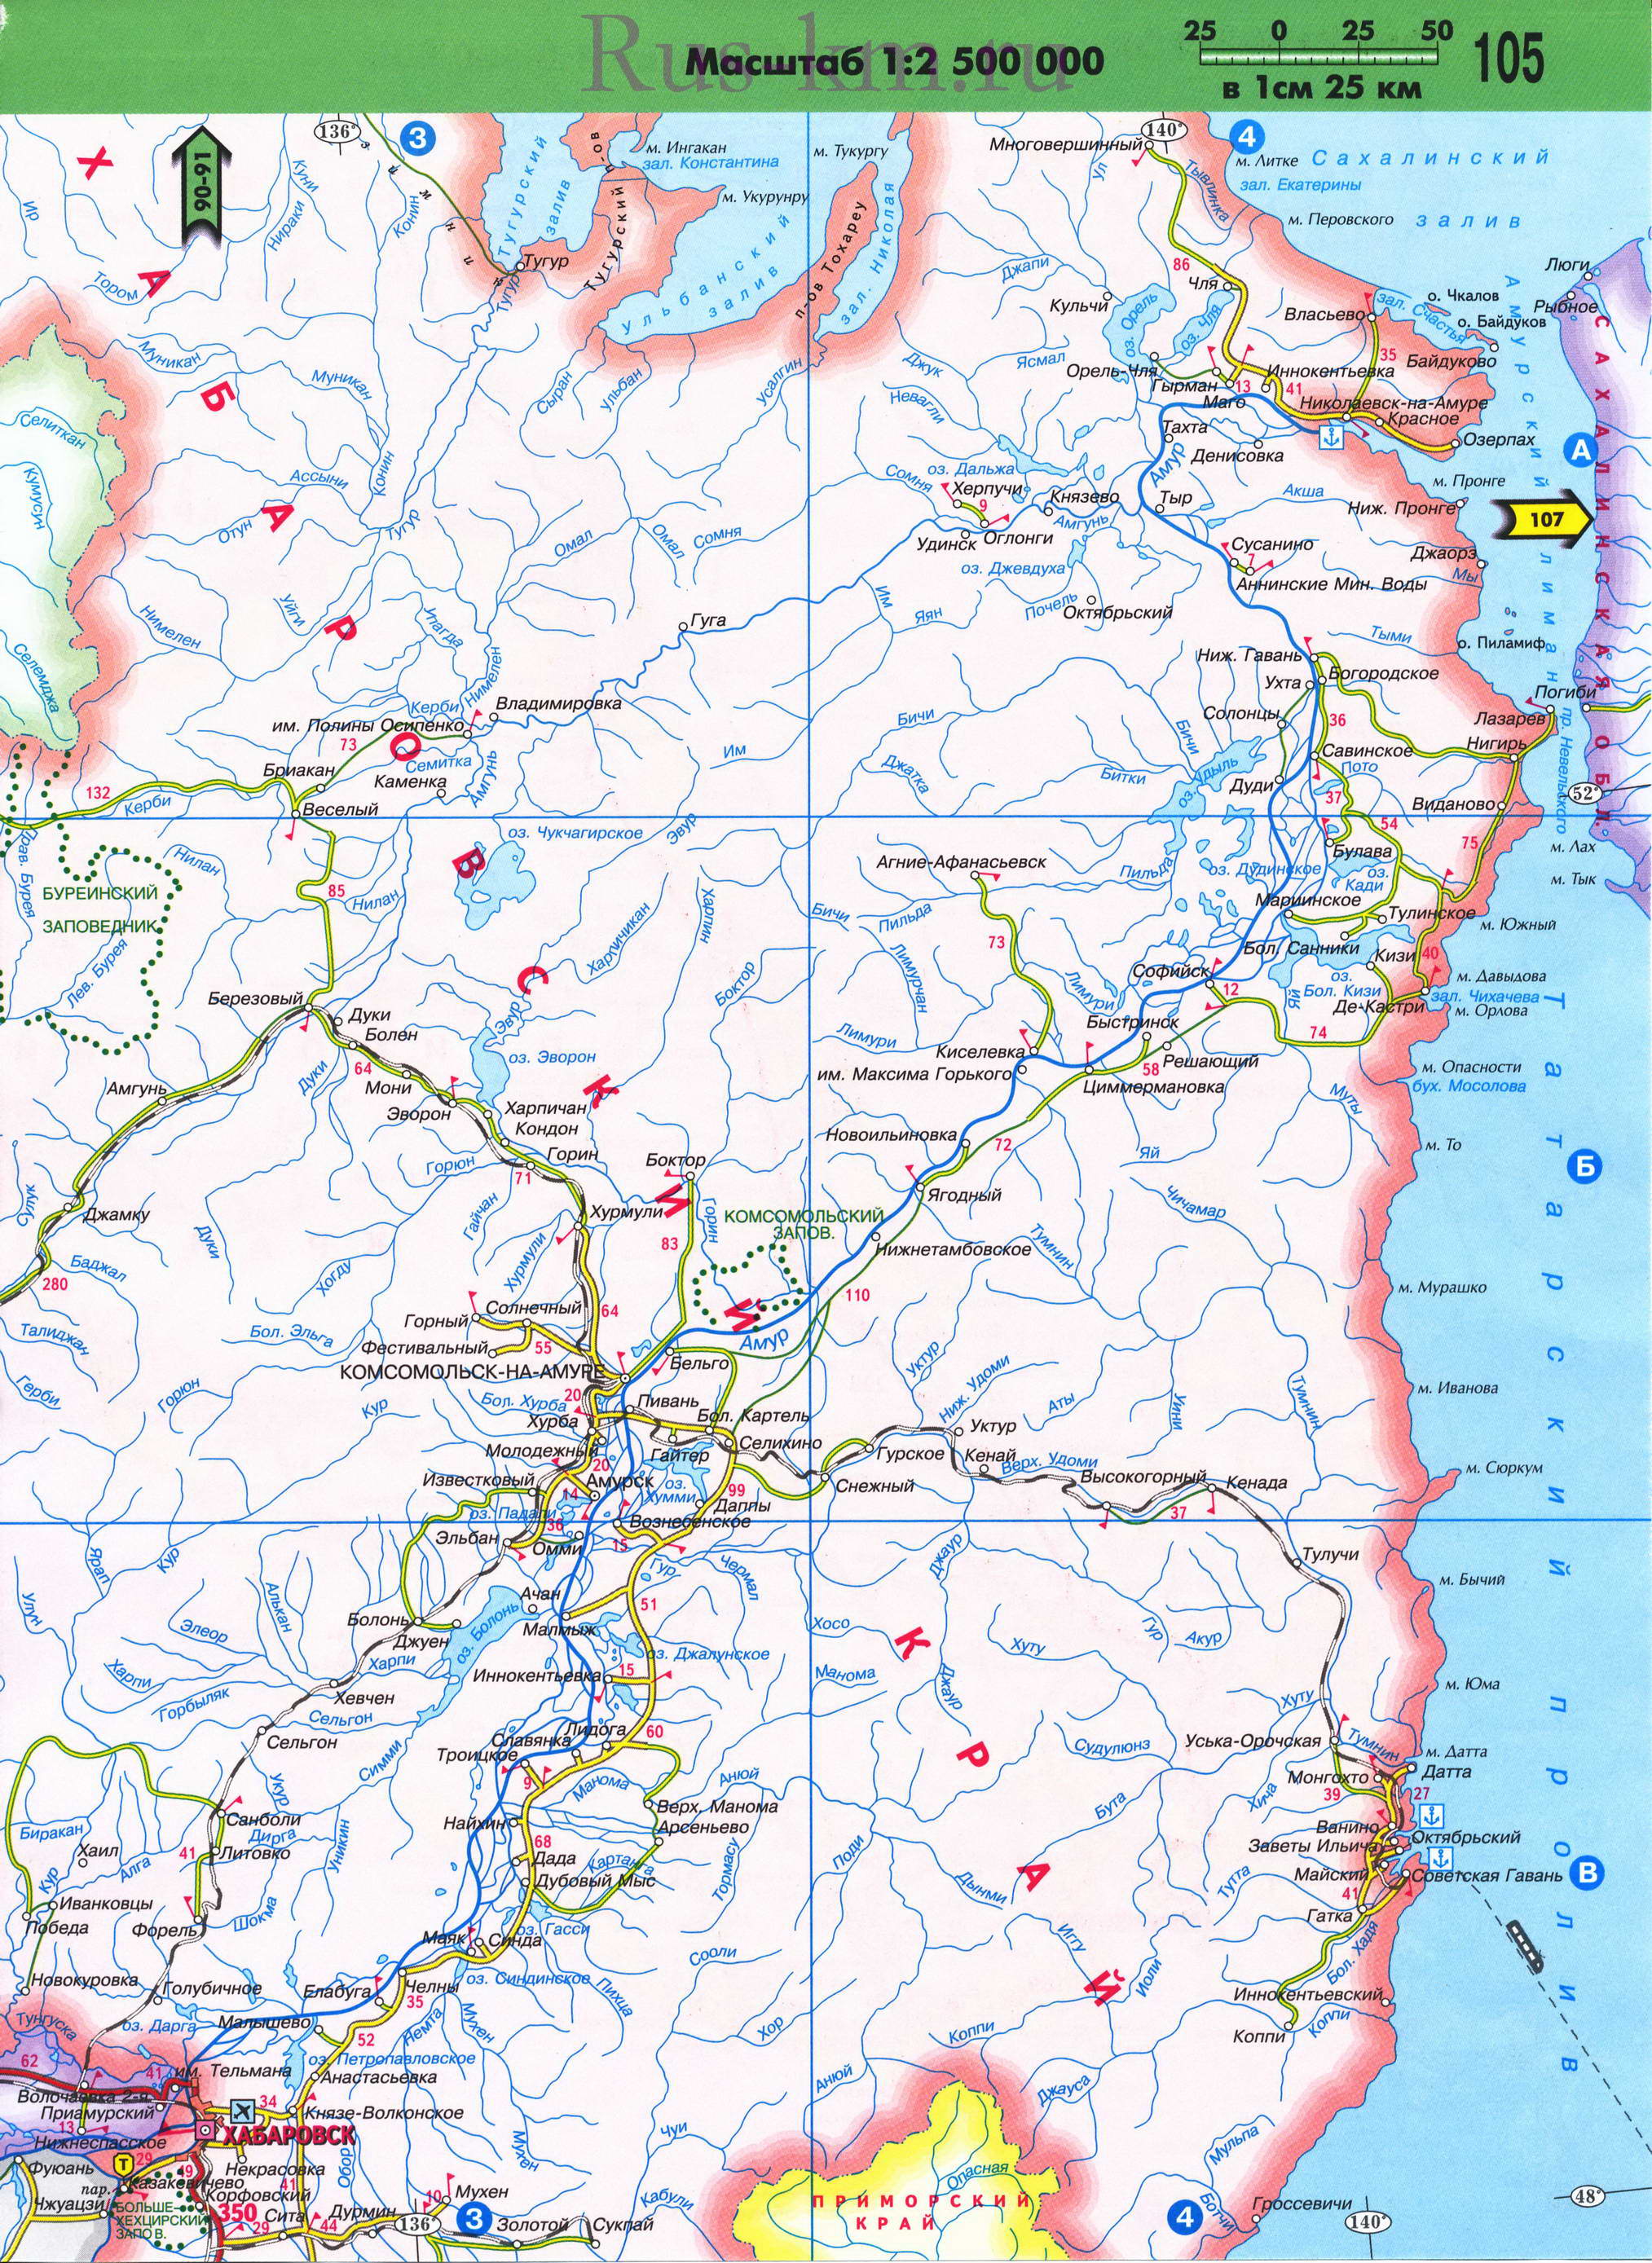 Карта Восточной Сибири автомобильная. Подробная карта автомобильных дорог Восточной Сибири из атласа России 2011 года, E2 - 